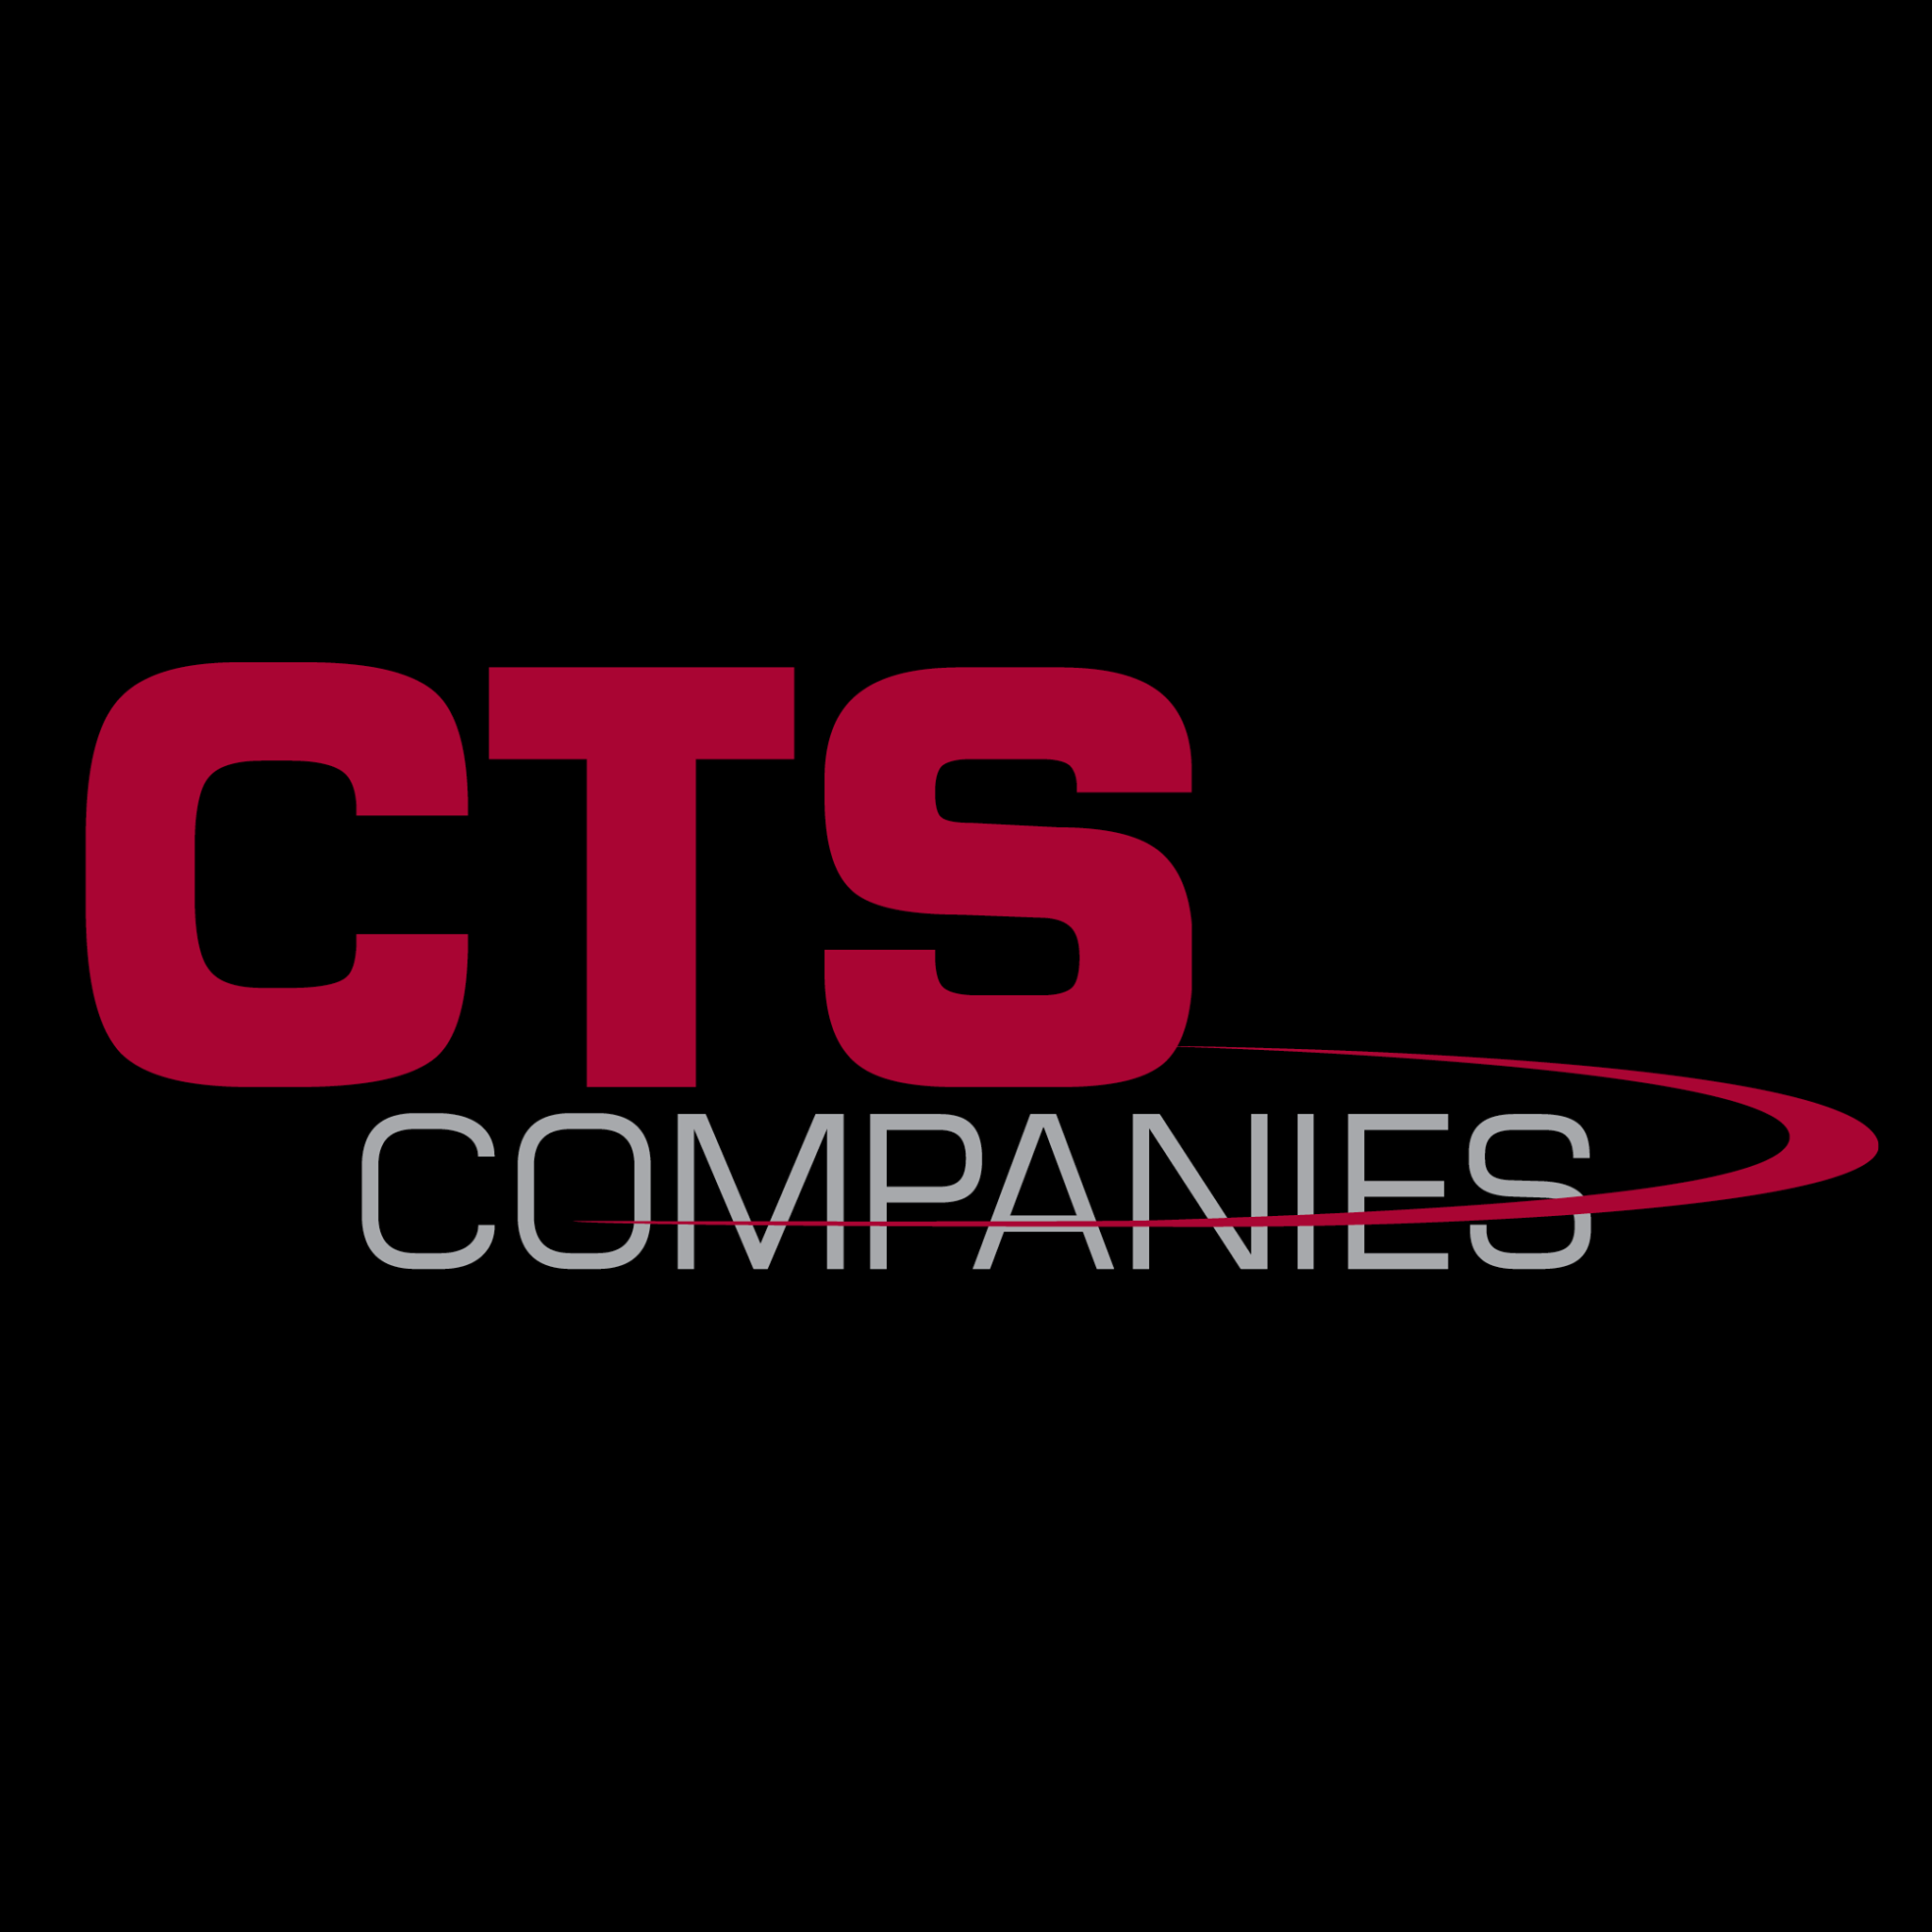 CTS Companies